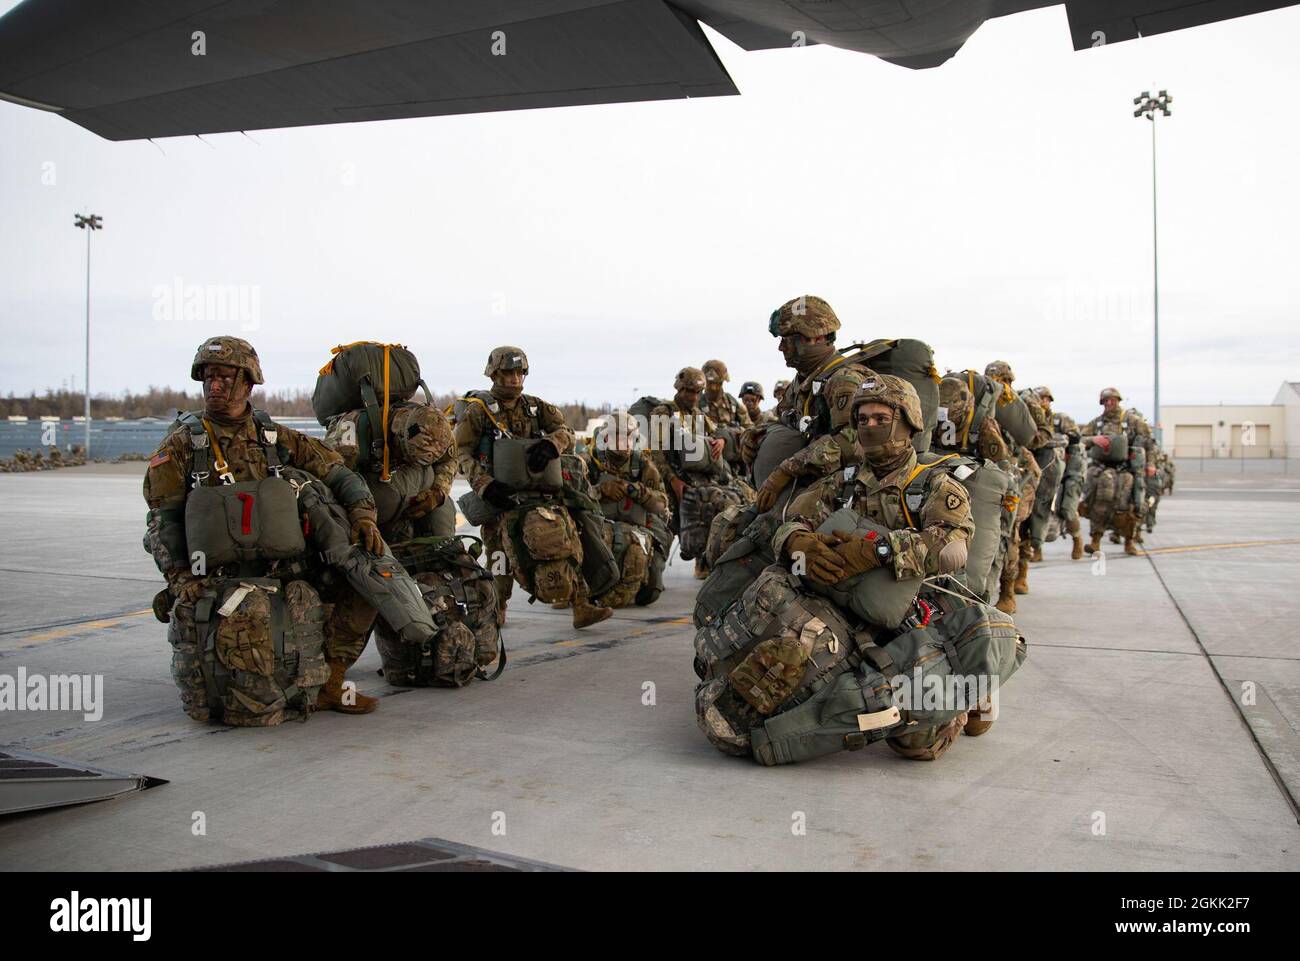 Des parachutistes de l'armée américaine affectés au 1er Bataillon (Airborne), 501e Régiment d'infanterie, embarquèrent un Hercules C-130 pour une opération d'entrée forcée conjointe (JFEO) le 11 mai 2021 pendant l'exercice Northern Edge 2021 (NE21). L'exercice du JFEO a impliqué plus de 400 parachutistes de l'armée américaine, et d'autres membres militaires de l'armée américaine, de la marine, de l'aviation et des Marines, et plus d'une douzaine d'aéronefs affectés à des escadrons partout aux États-Unis, y compris le CH-47s, et la US Air Force HC-130 Hercules , MC-130J Commando IIS, Et C-17 Globemaster IIIs. Formation réaliste de combat, comme JFEO, menée pendant Banque D'Images